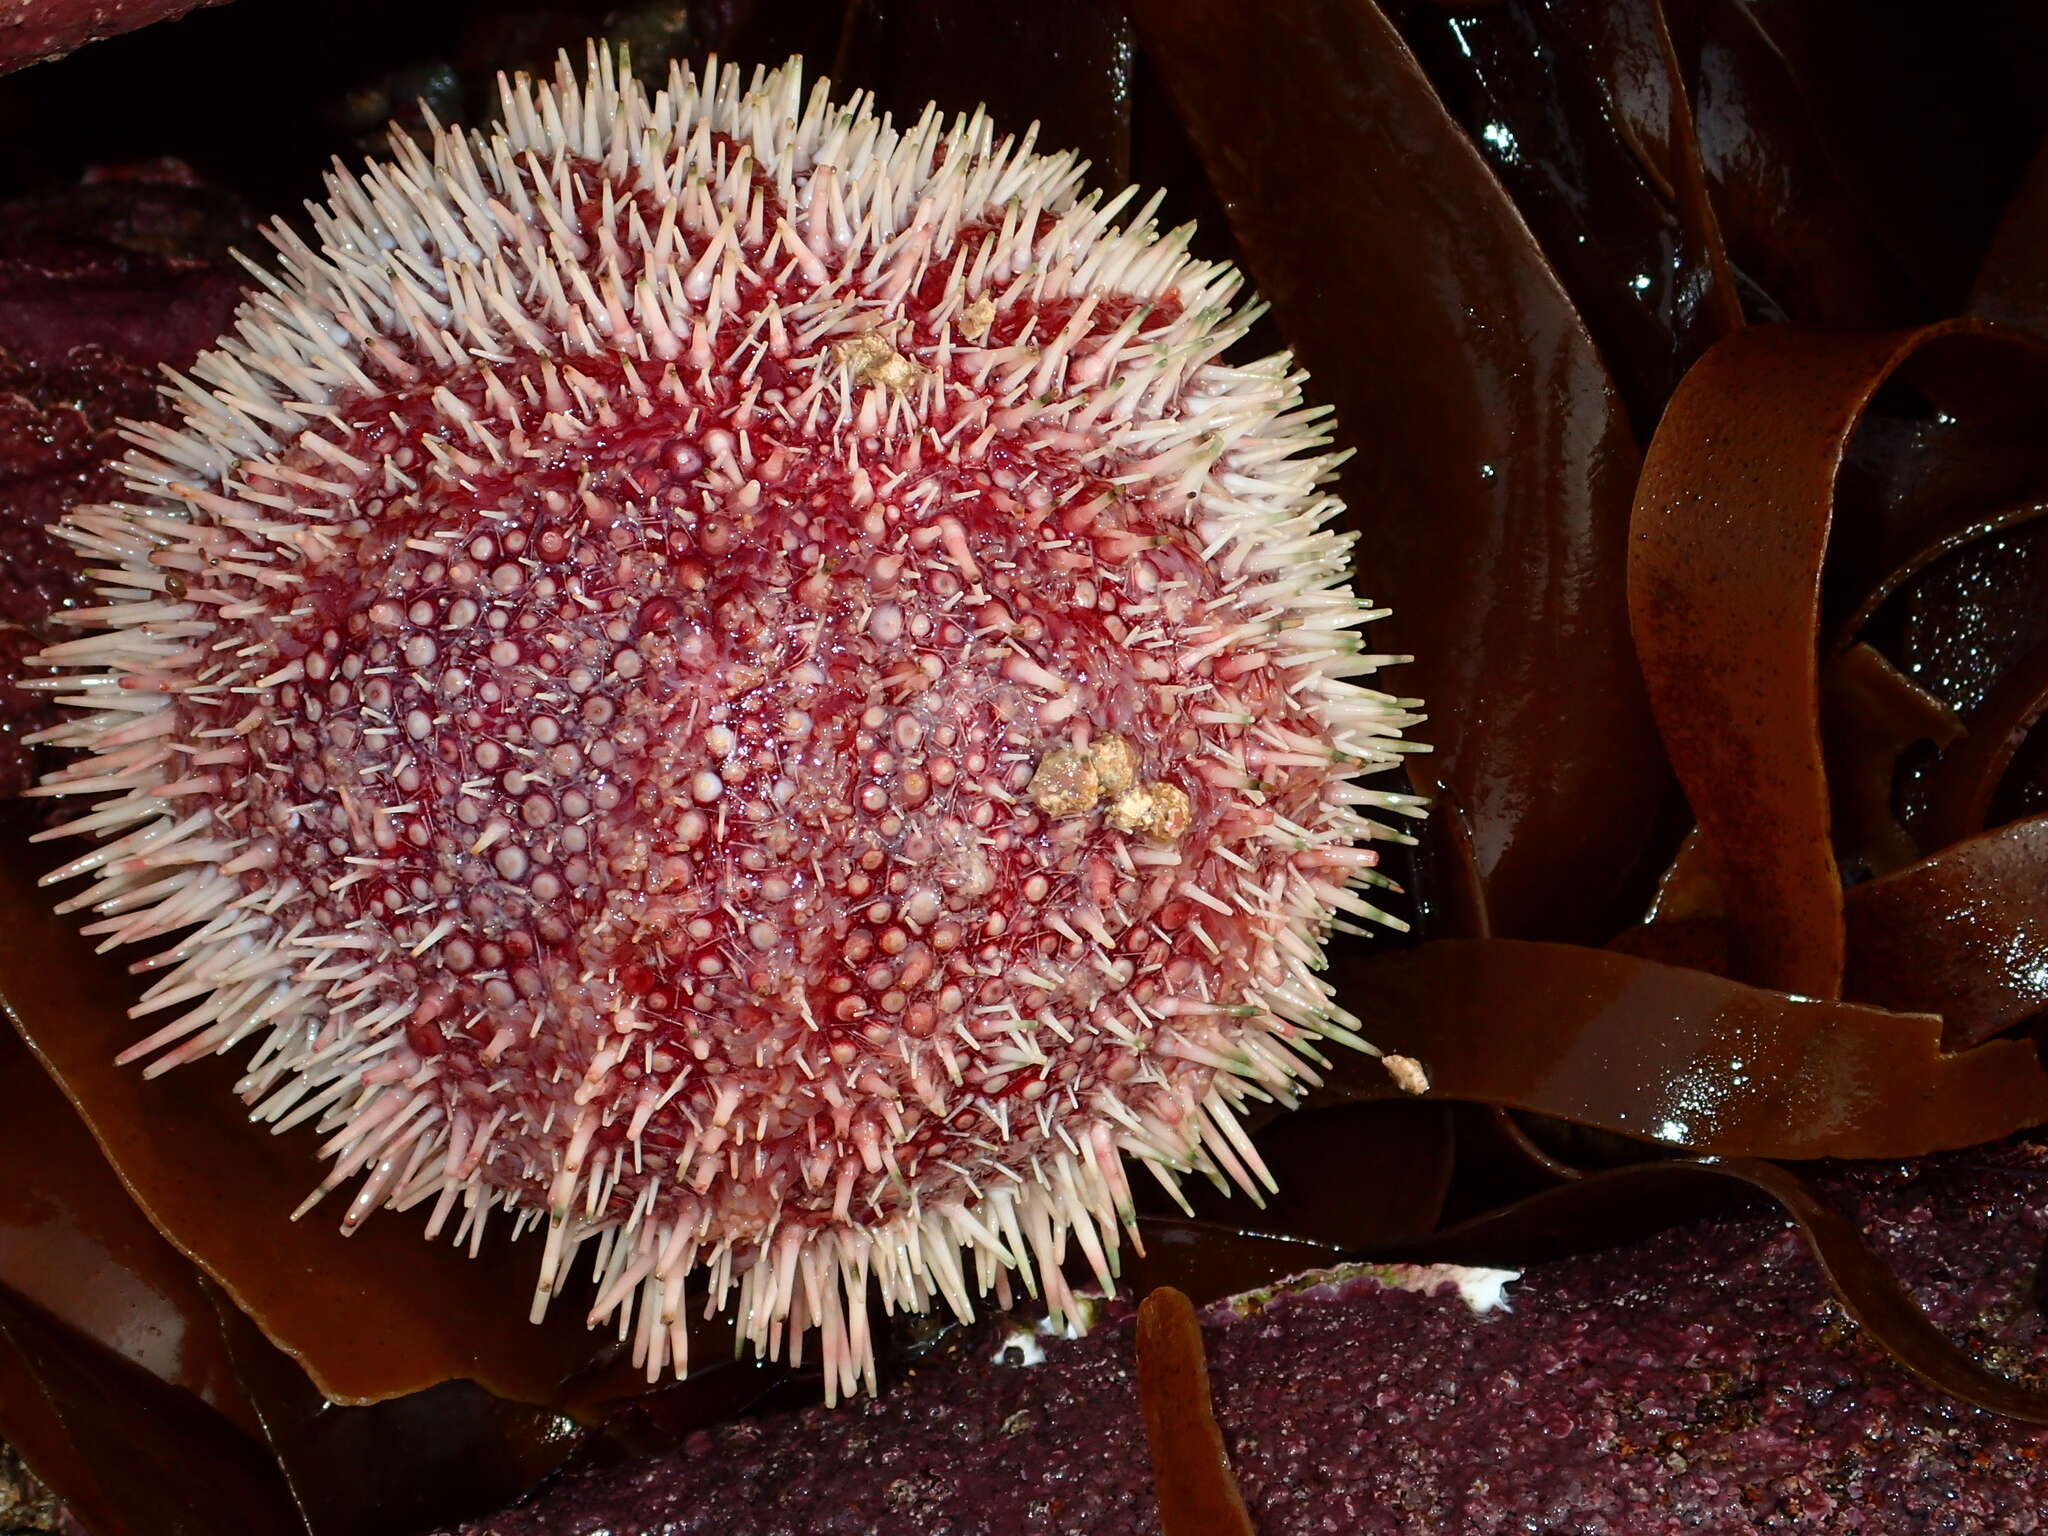 Image of Edible sea urchin